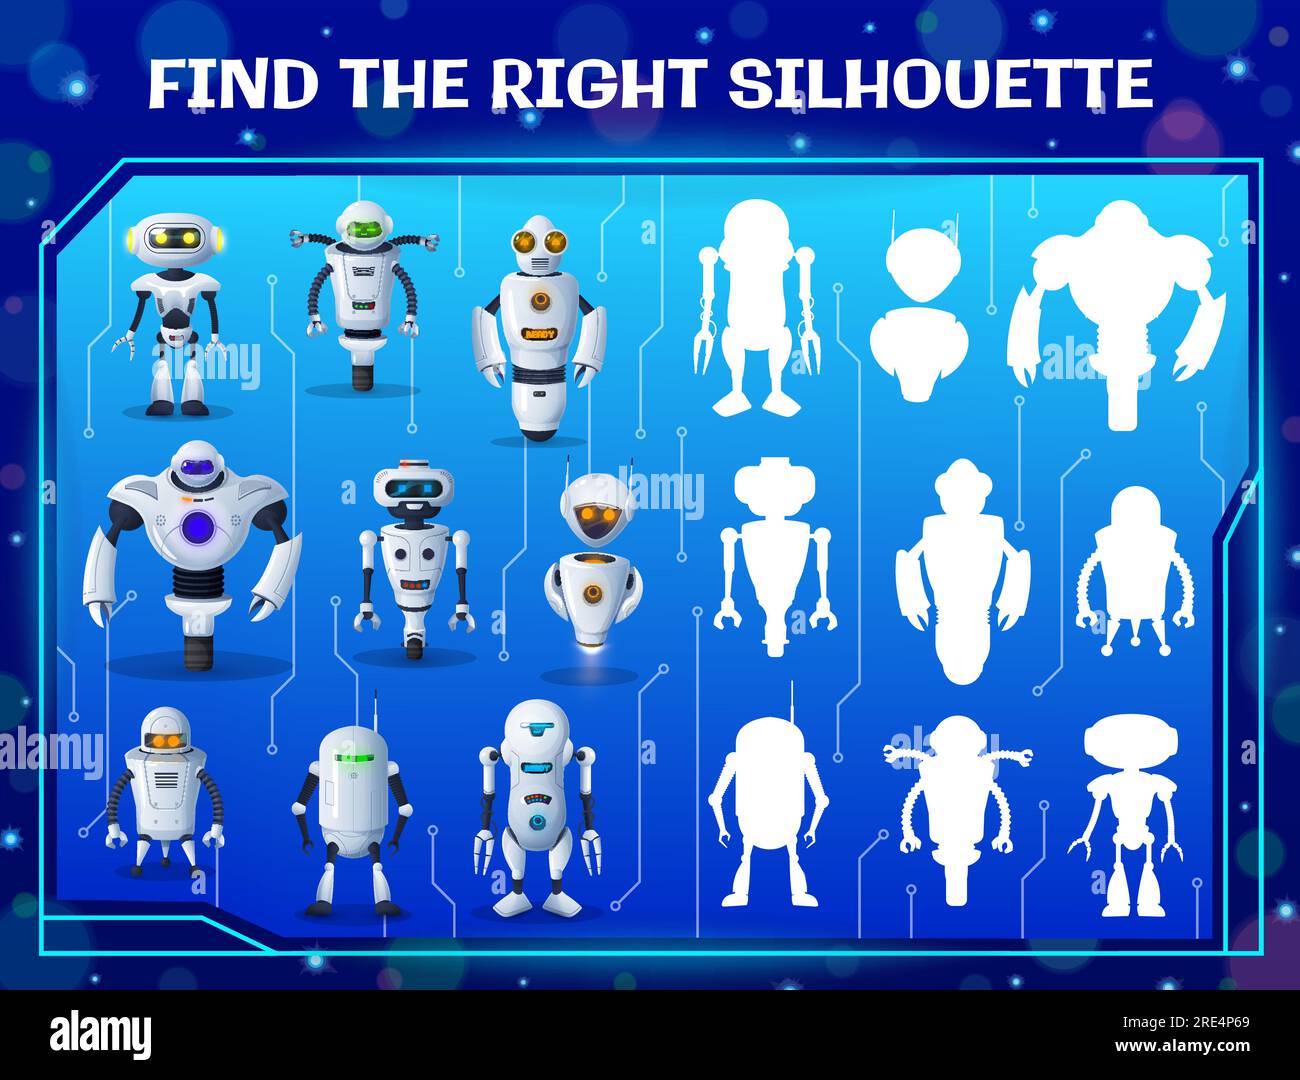 Finde das richtige Roboter-Silhouetten-Labyrinth für Kinder. Ein Schatten-Match-Vektorrätsel mit Cartoon-ai-Cyborgs. Logiktests mit Androiden und künstlichen Intelligenz-Bots. Aufgabe der kindlichen Gedankenentwicklung Stock Vektor